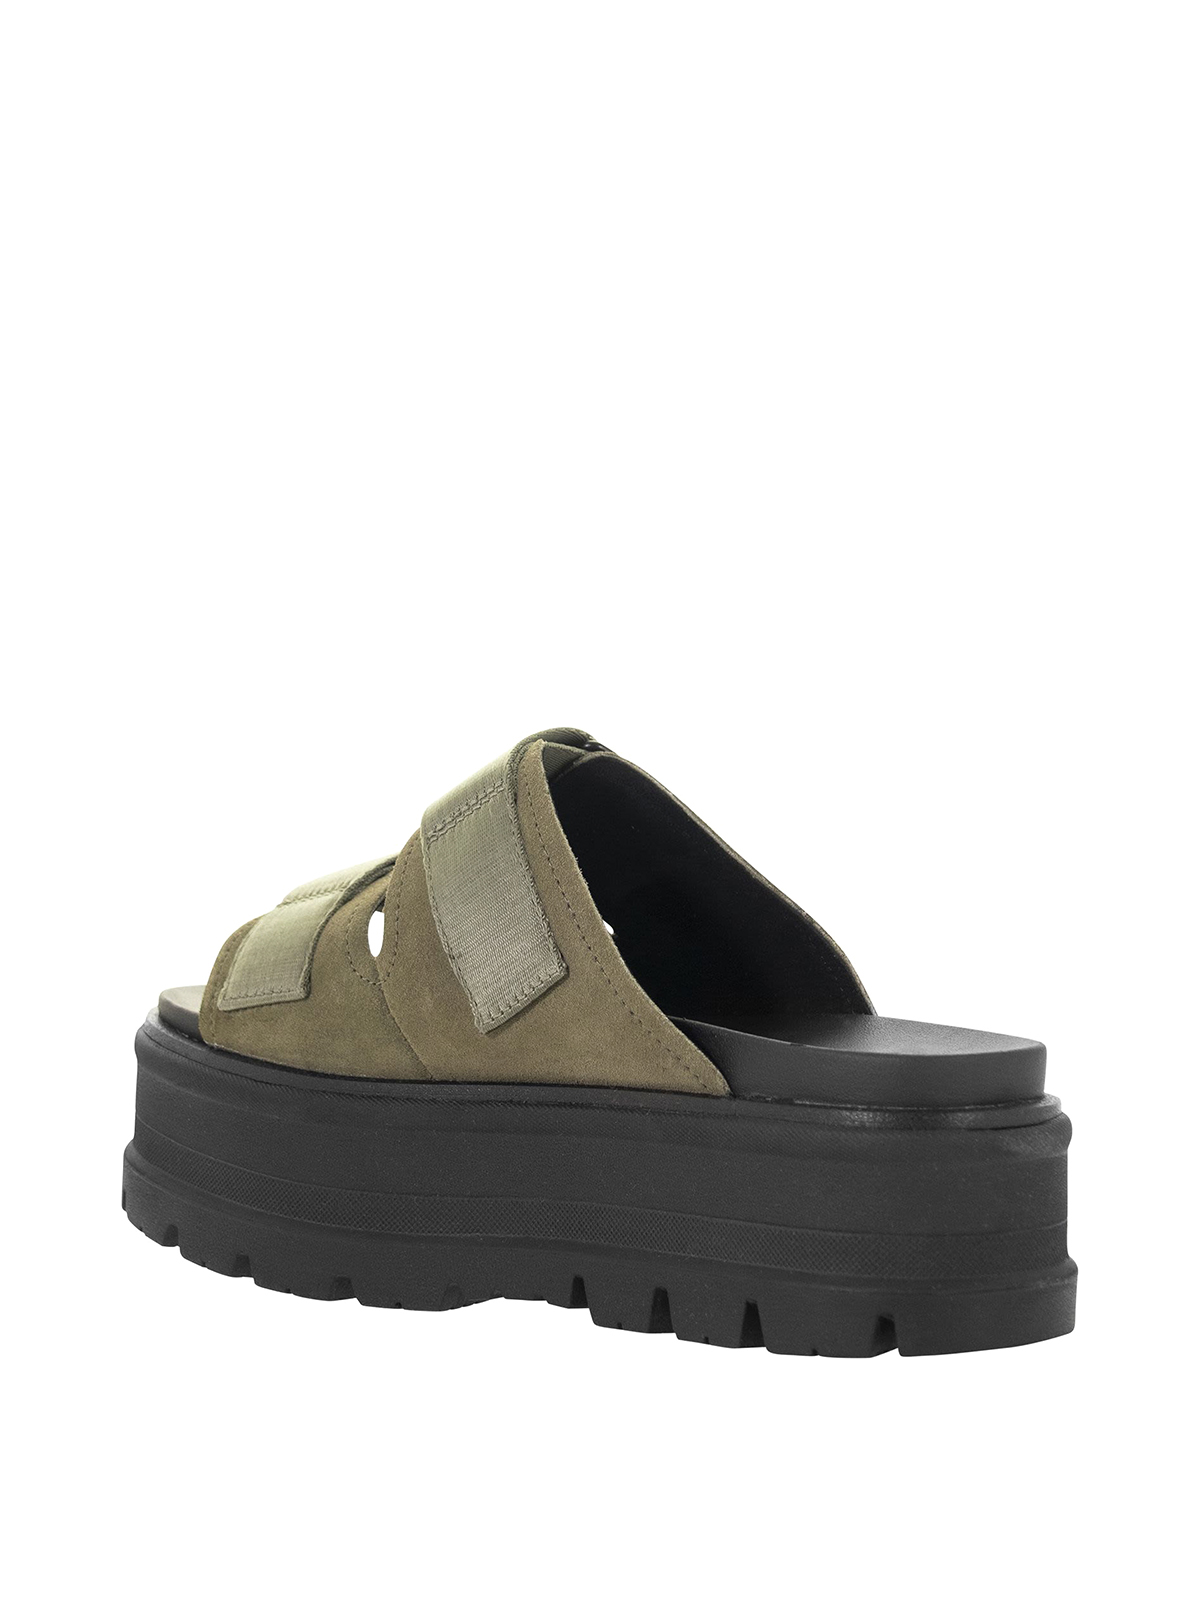 Sandals Ugg - Clem sandals - 1118771WOLV | Shop online at iKRIX